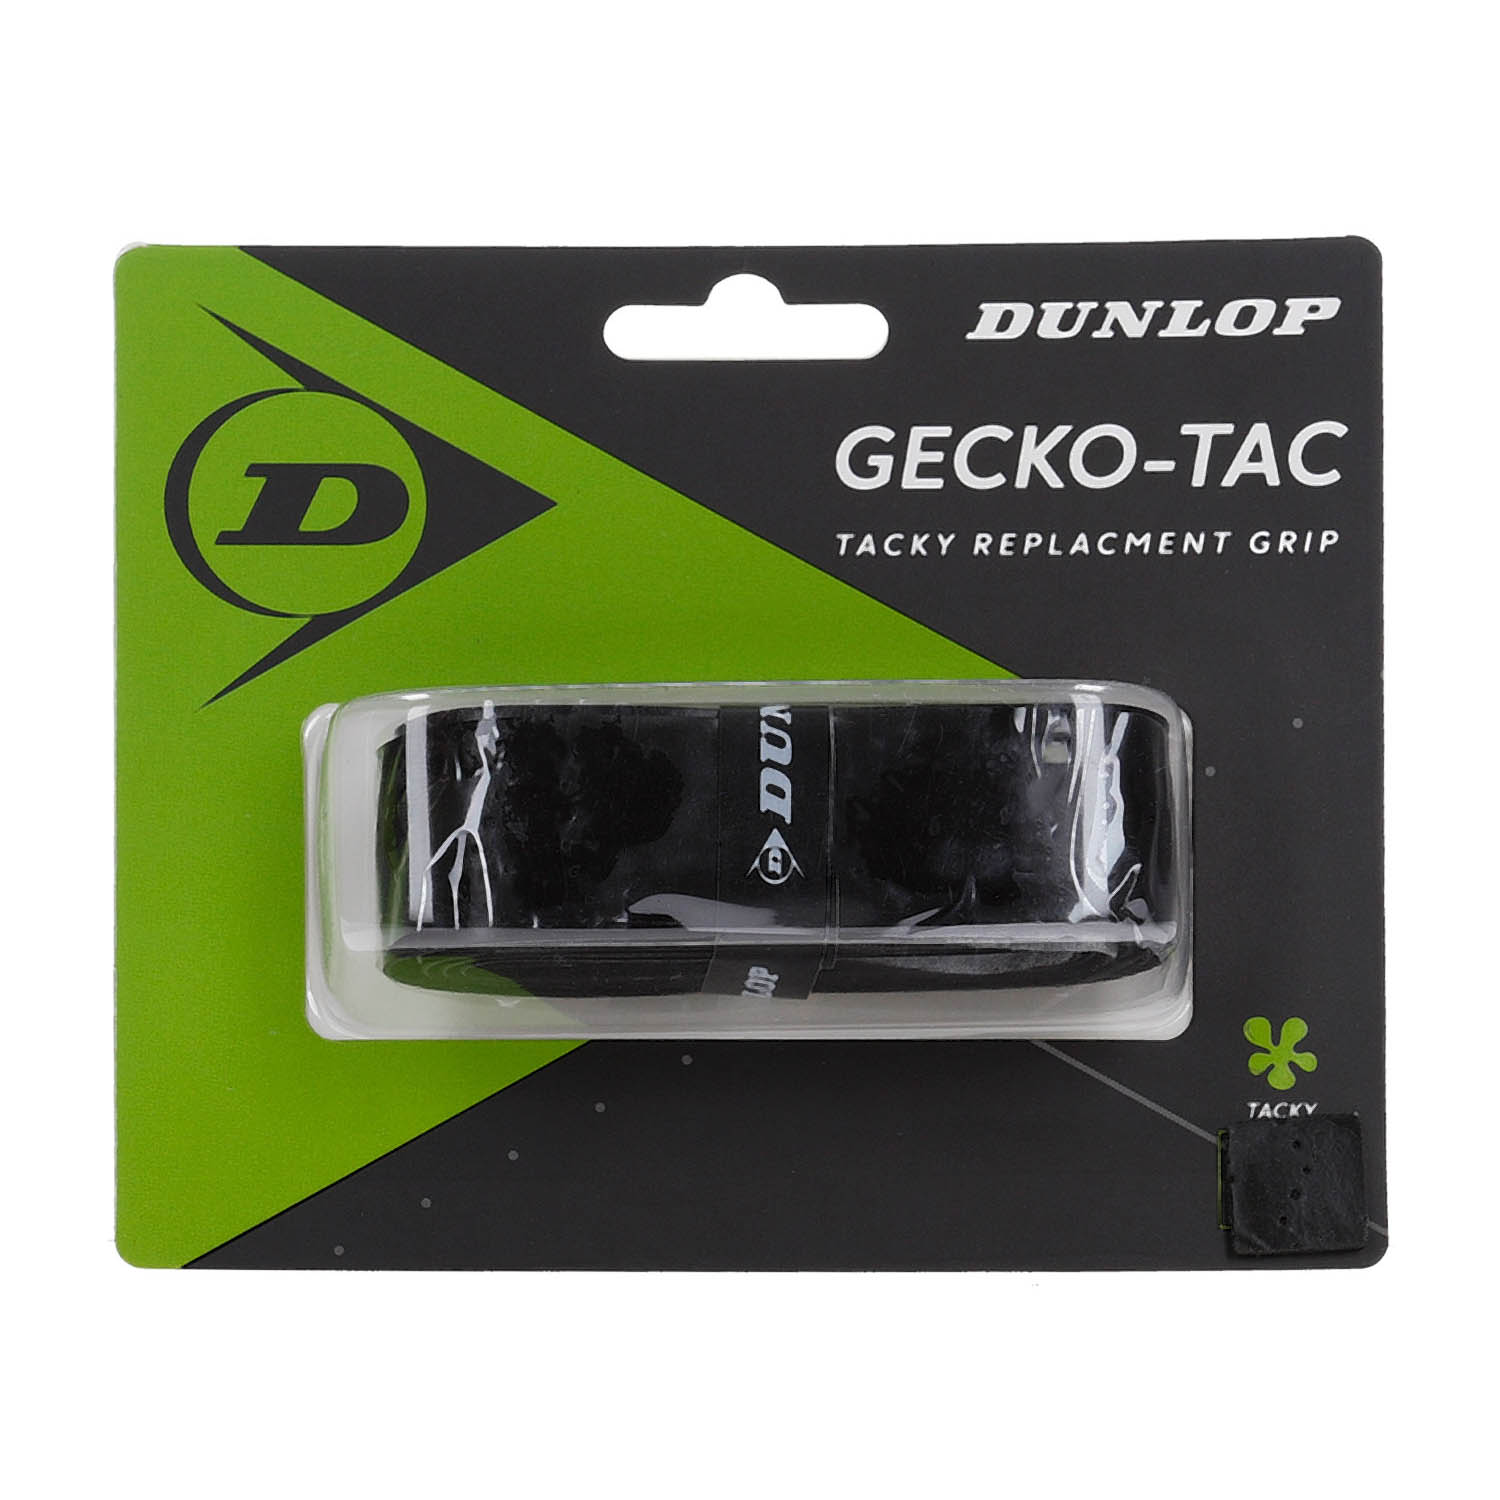 Dunlop Gecko-Tac Grips - Black